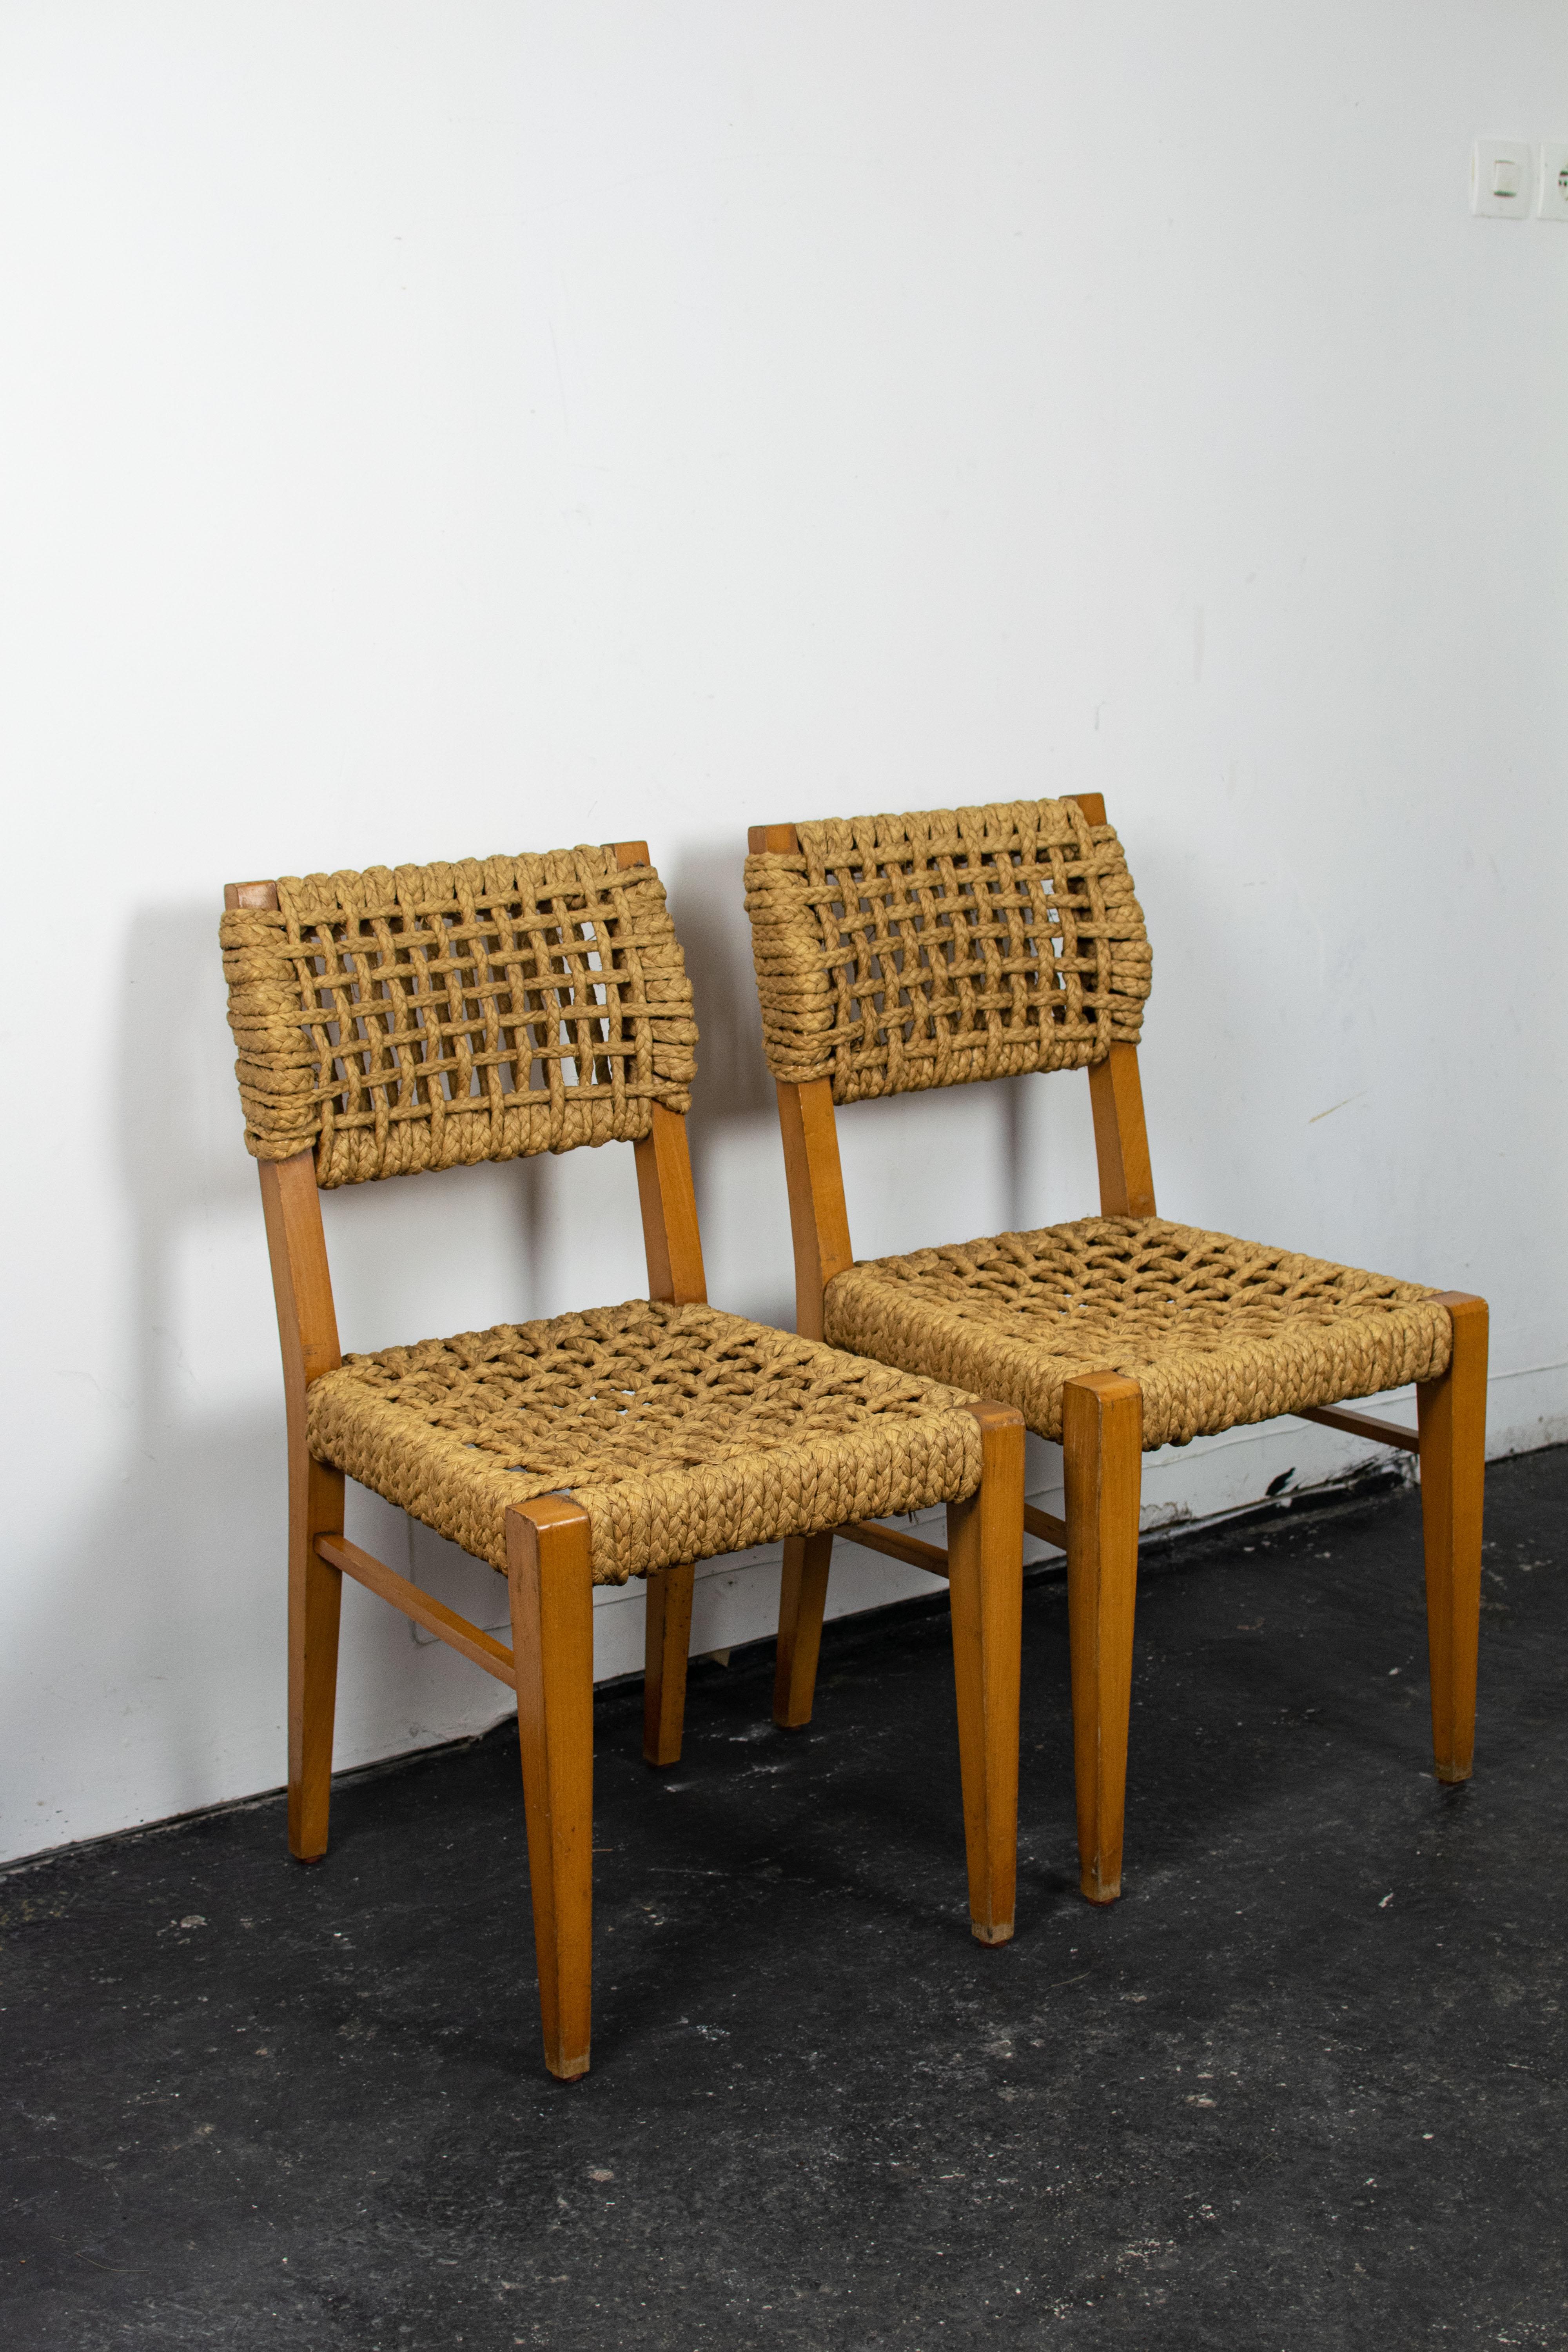 Chaises en cordes de chanvre tressées sur cadre en bois de hêtre. Rare série de trois chaises réalisées par les designers français Adrien Audoux & Frida Minet dans les années 1950 pour Vibo. Ces chaises de salle à manger du milieu du 20ème siècle